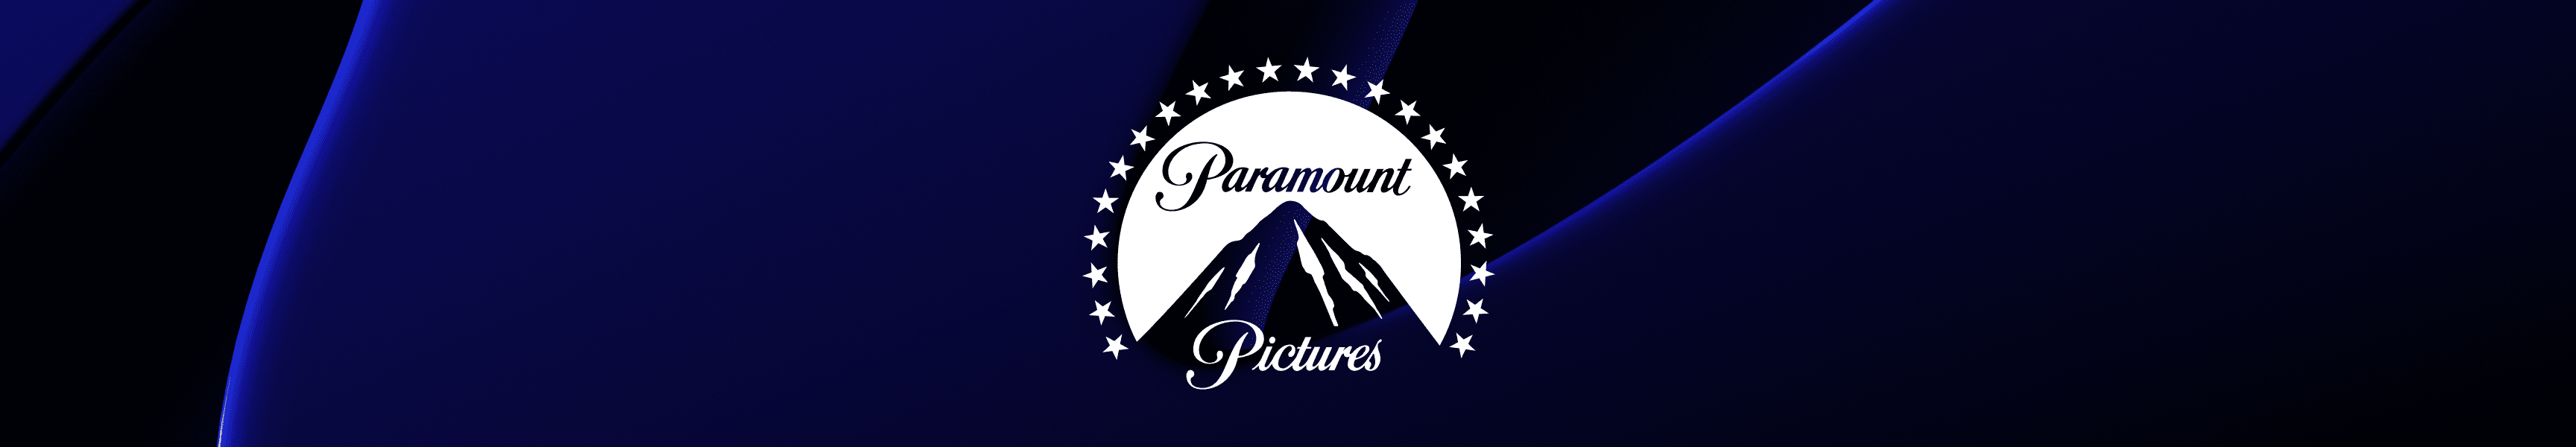 Paramount Pictures Tasses à café